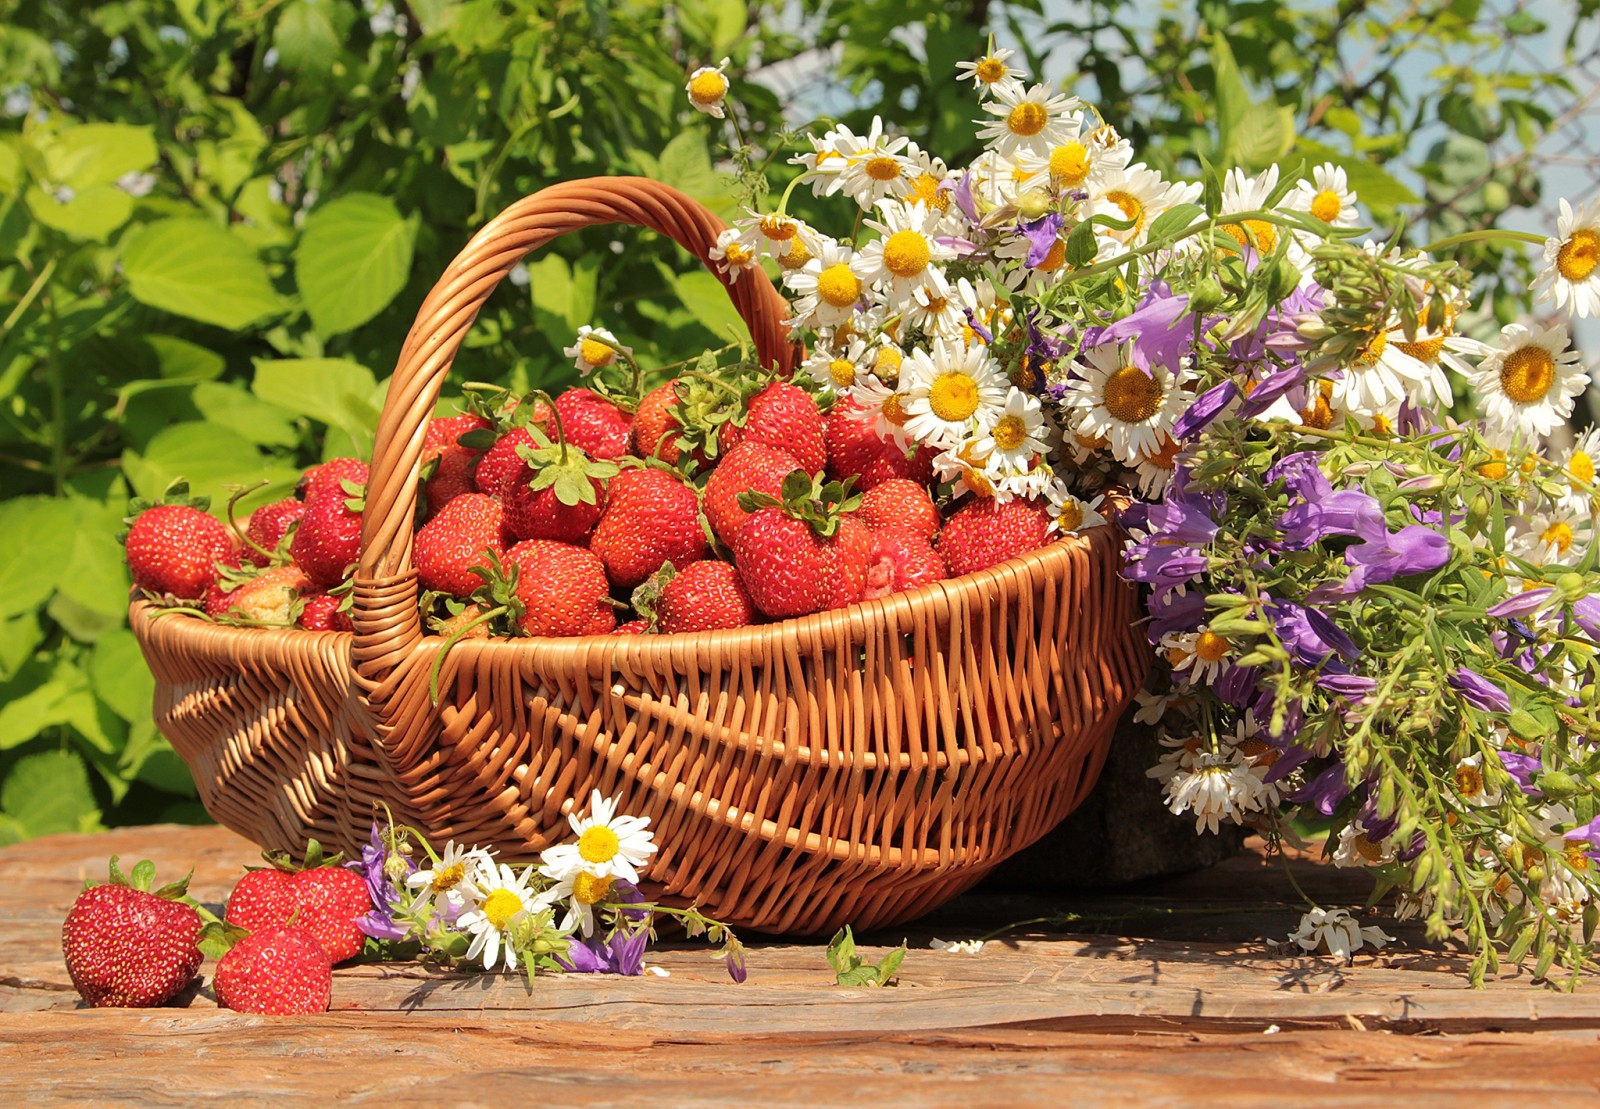 夏季, 青菜, 花卉, 钟声, 太阳, 草莓, 洋甘菊, 篮